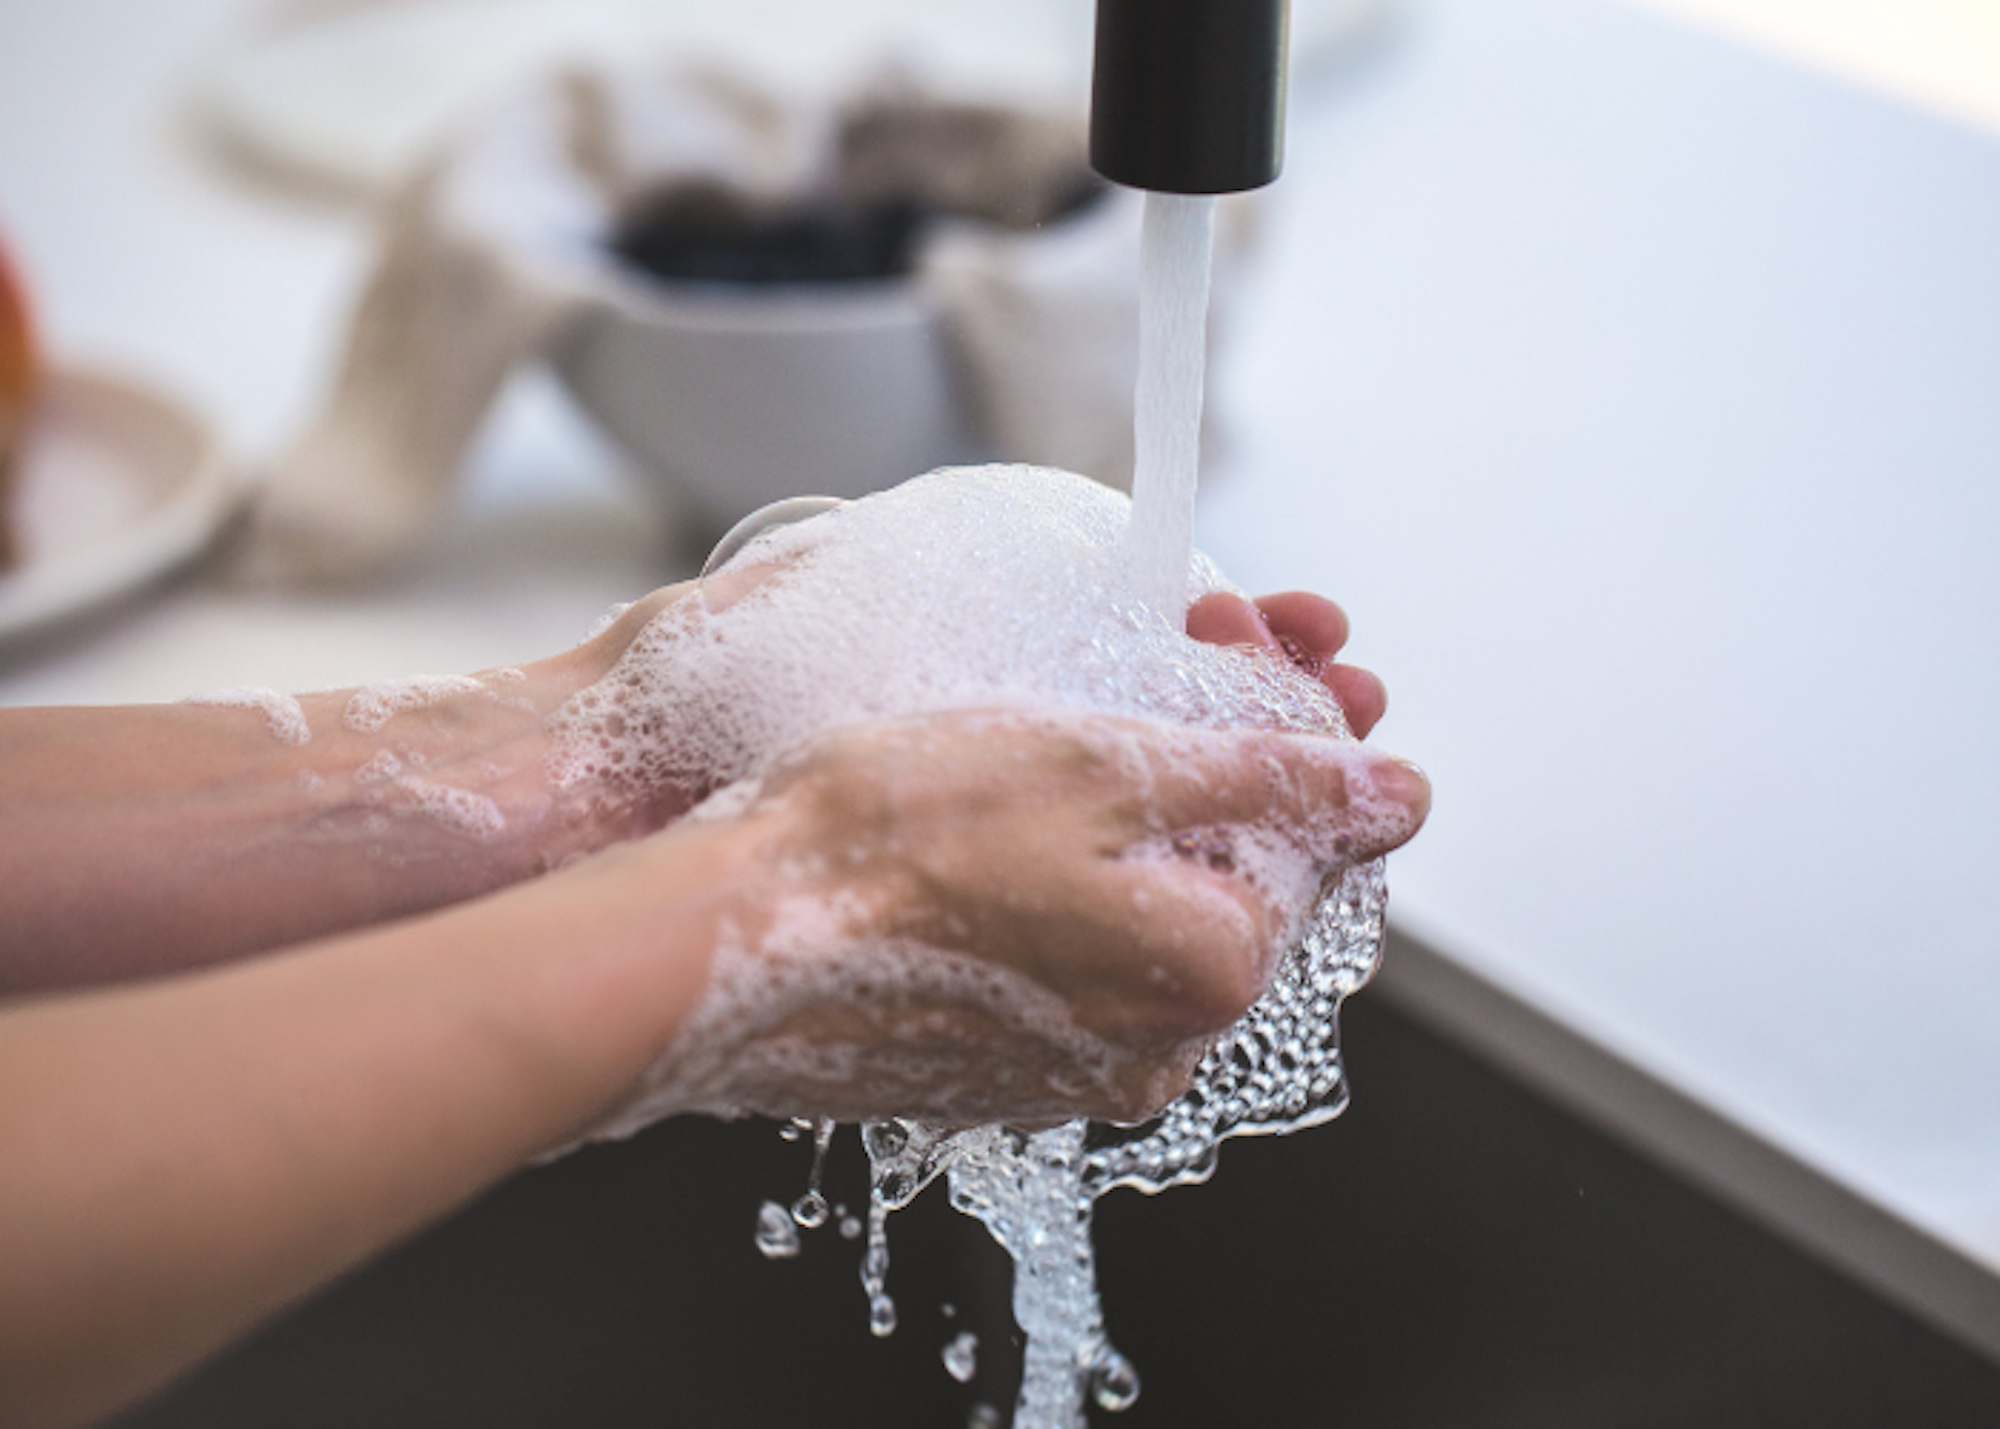 Foam Soap vs. Liquid Soap